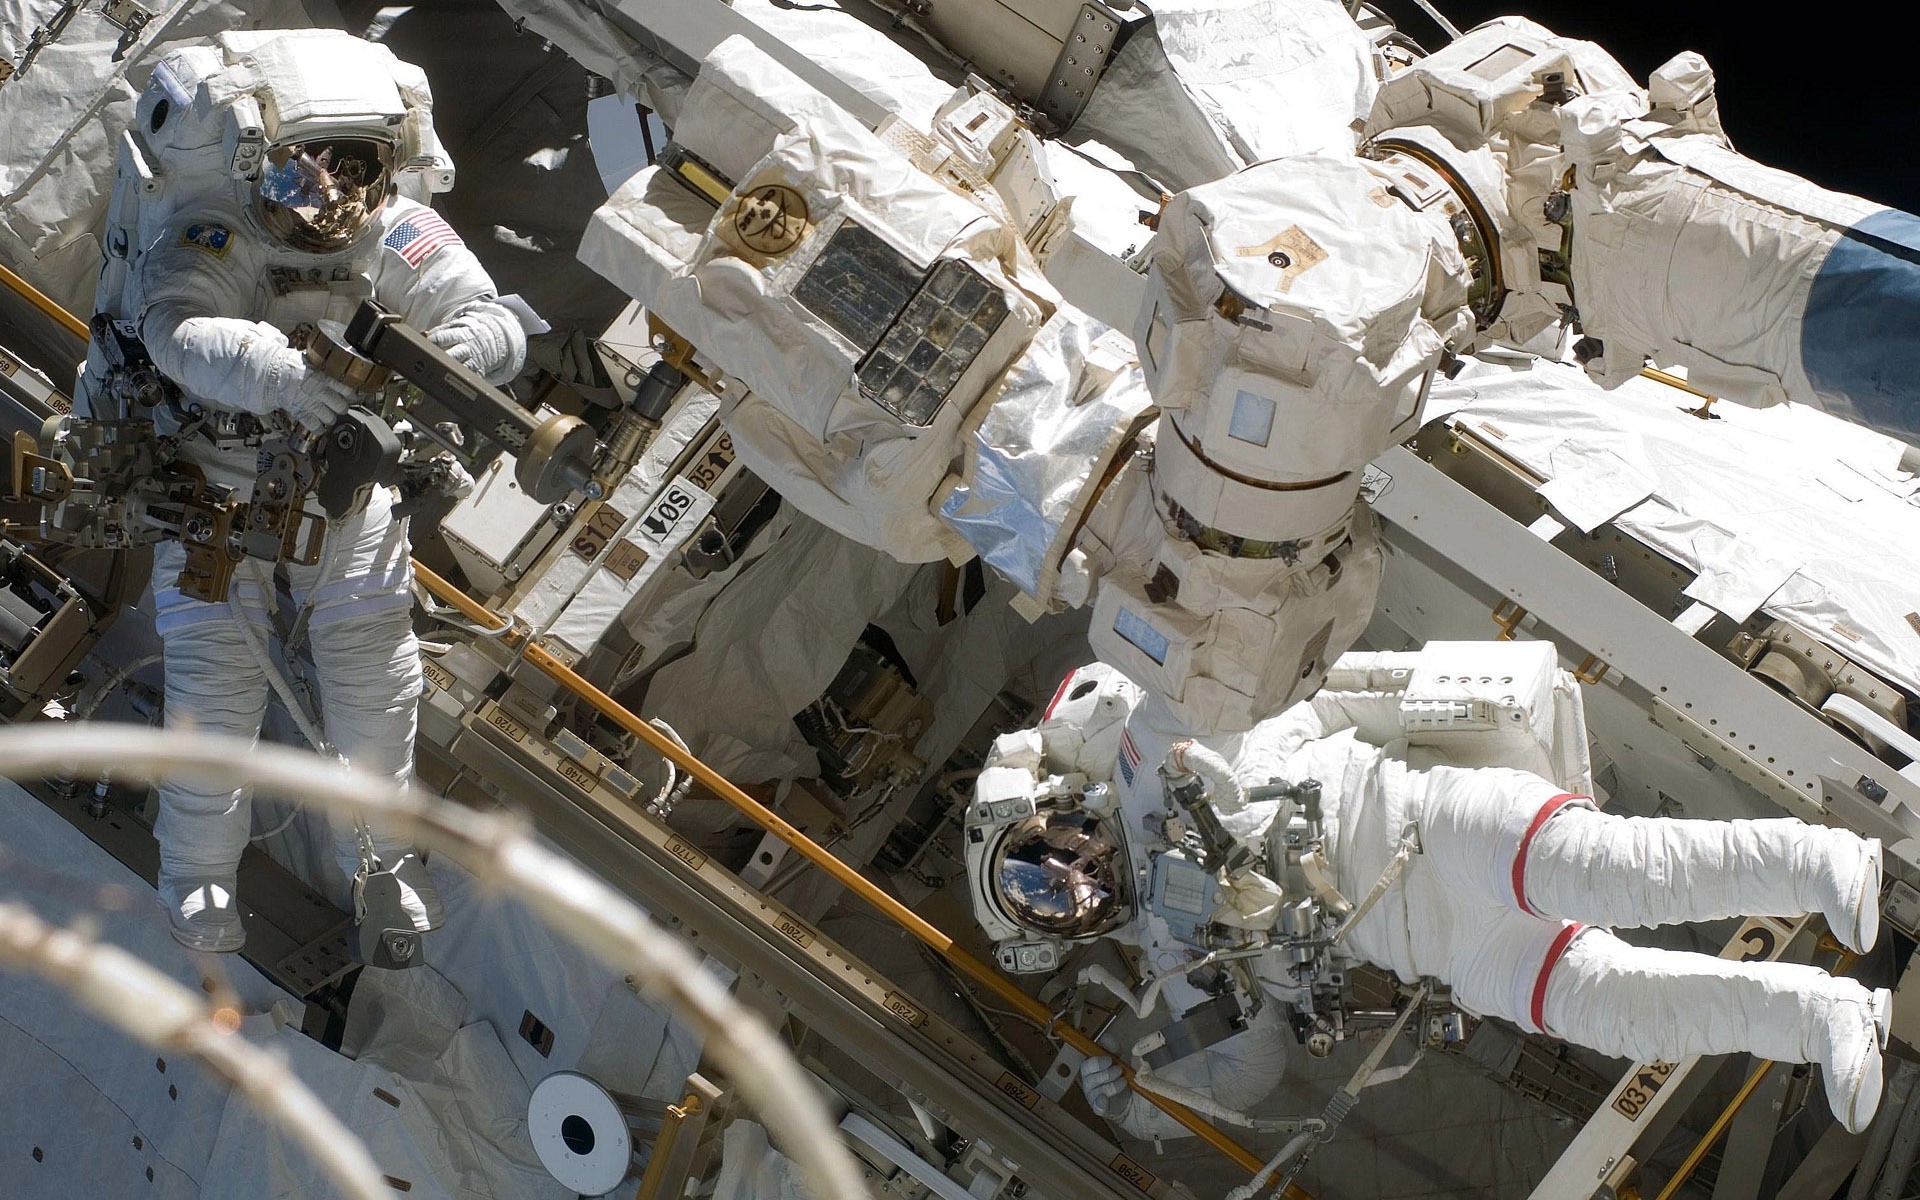 космос космонавт технология робот загрязнения космический корабль промышленность машина наука военные мощность производство автомобиль человек сталь оборудование войны разведка топлива отходов